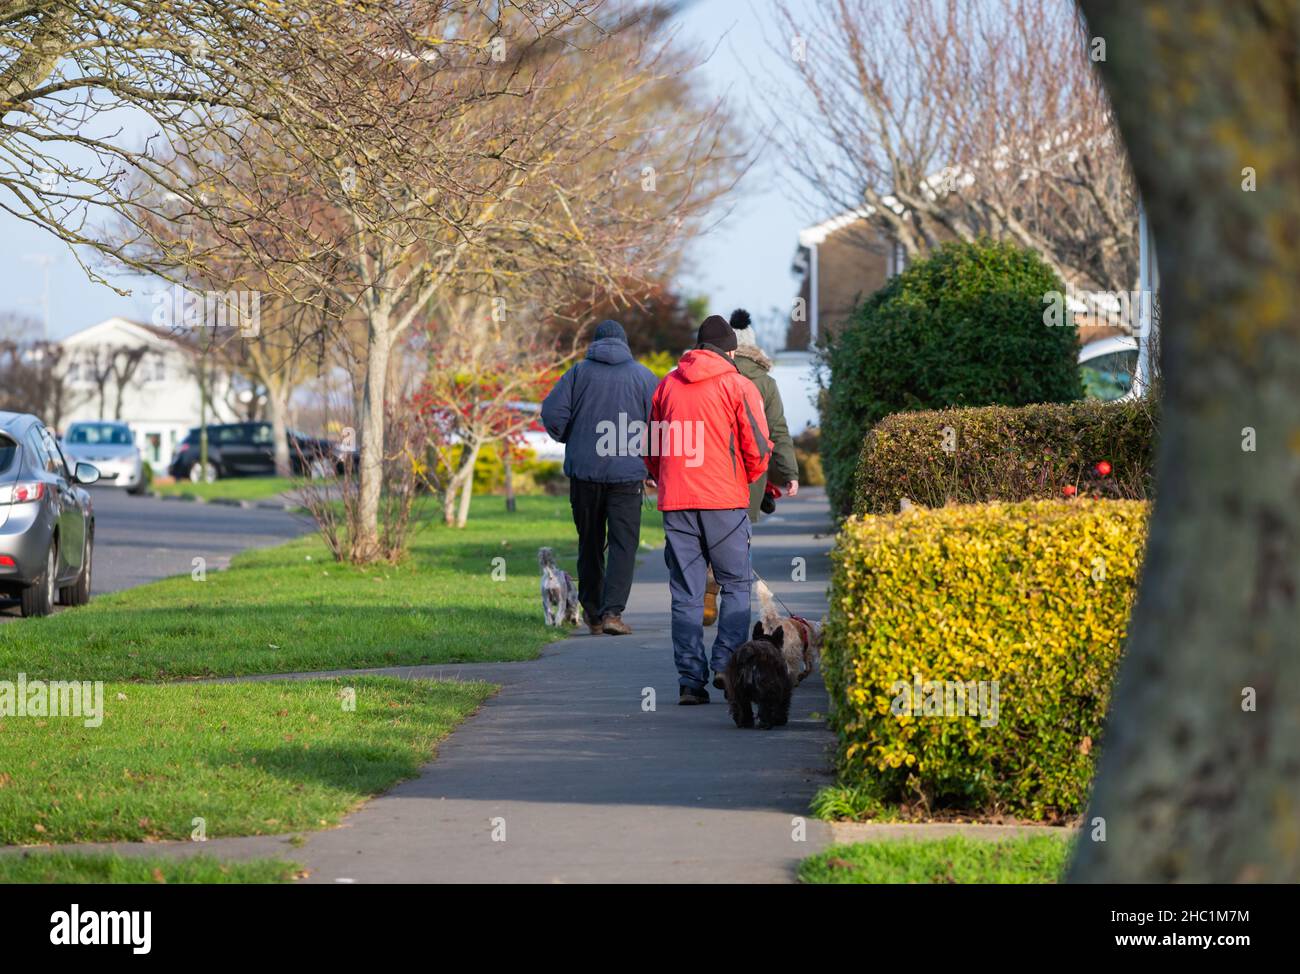 Personnes marchant le long d'un trottoir de bord de route en hiver, vêtues de manteaux chauds, chiens de marche en Angleterre, au Royaume-Uni. Banque D'Images